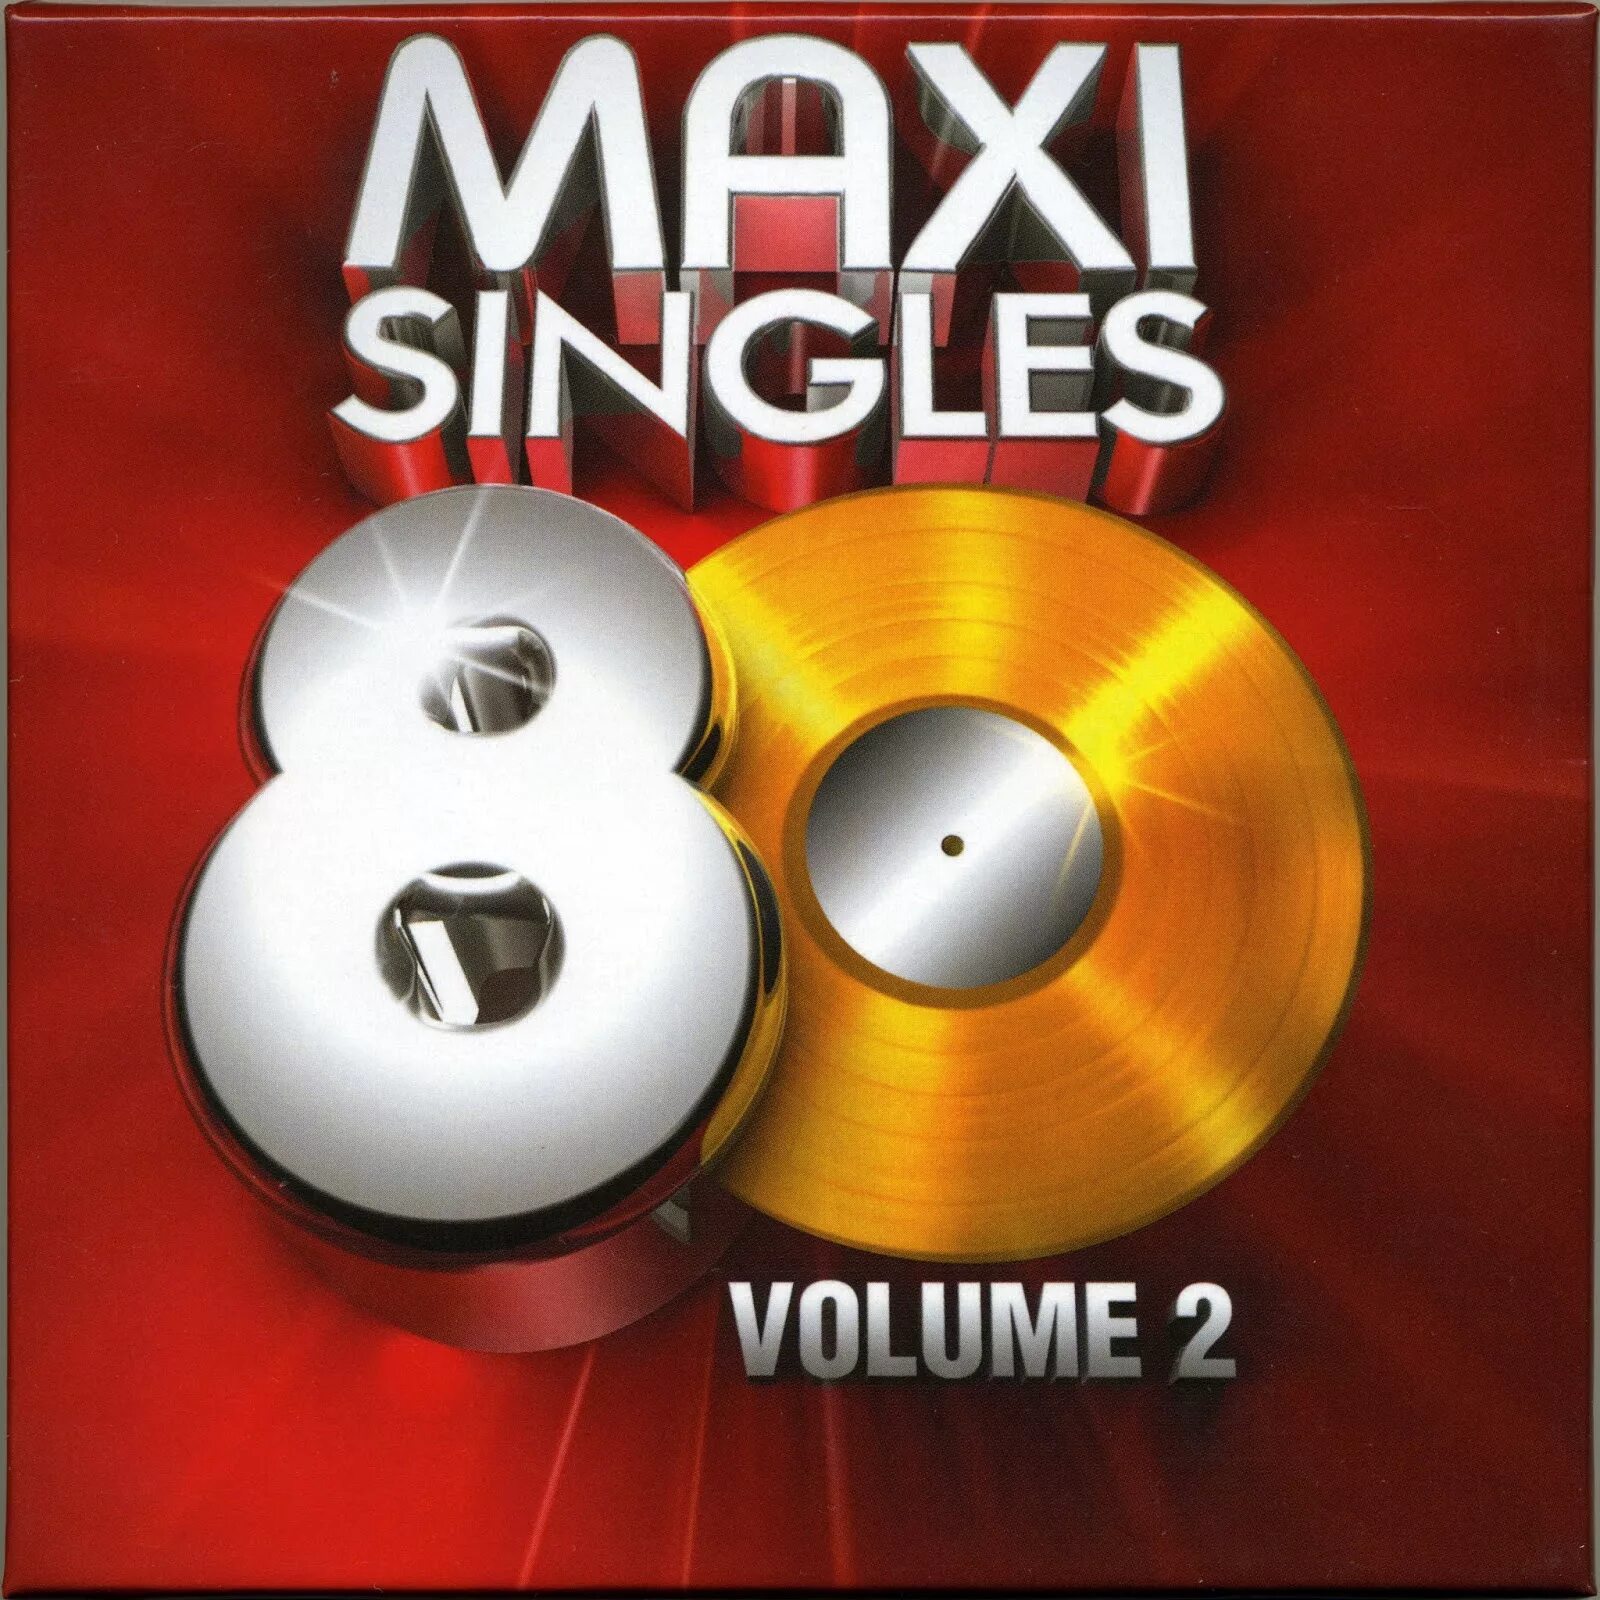 Макси сингл. Mp3 обложка Italo Maxi Hits. Обложка Audio CD va-Maxi Disco. Disco 80s rare Special Versions Vol.2.